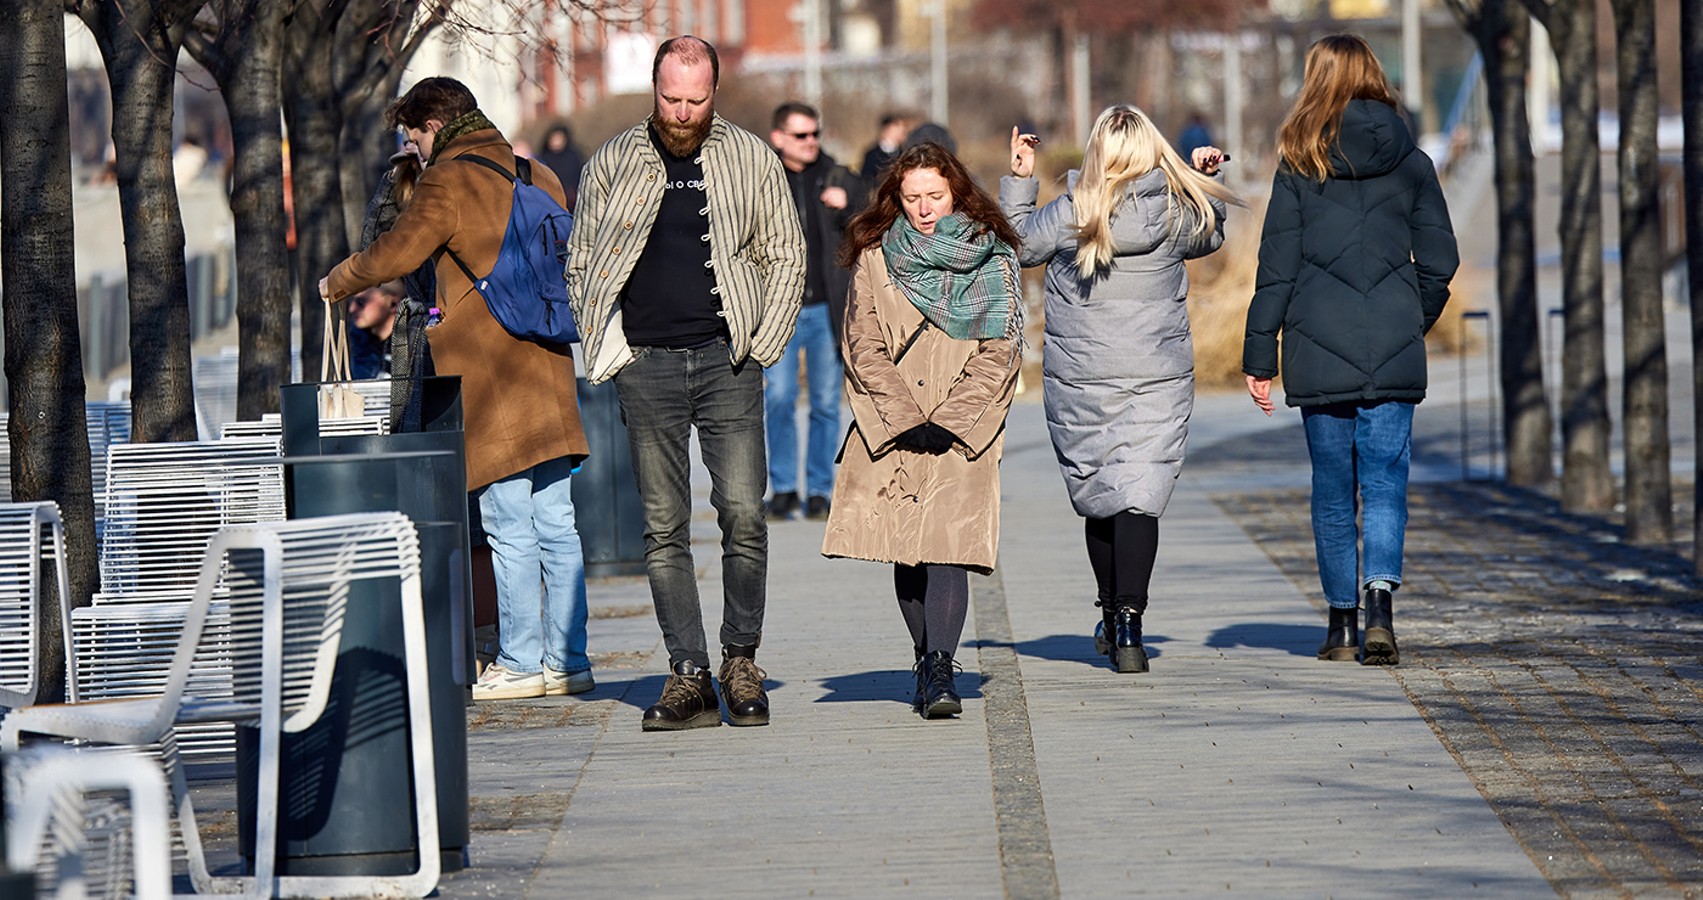 14 градусов что надеть. Москва люди. Люди в Москве весной. На улицу без шапки.